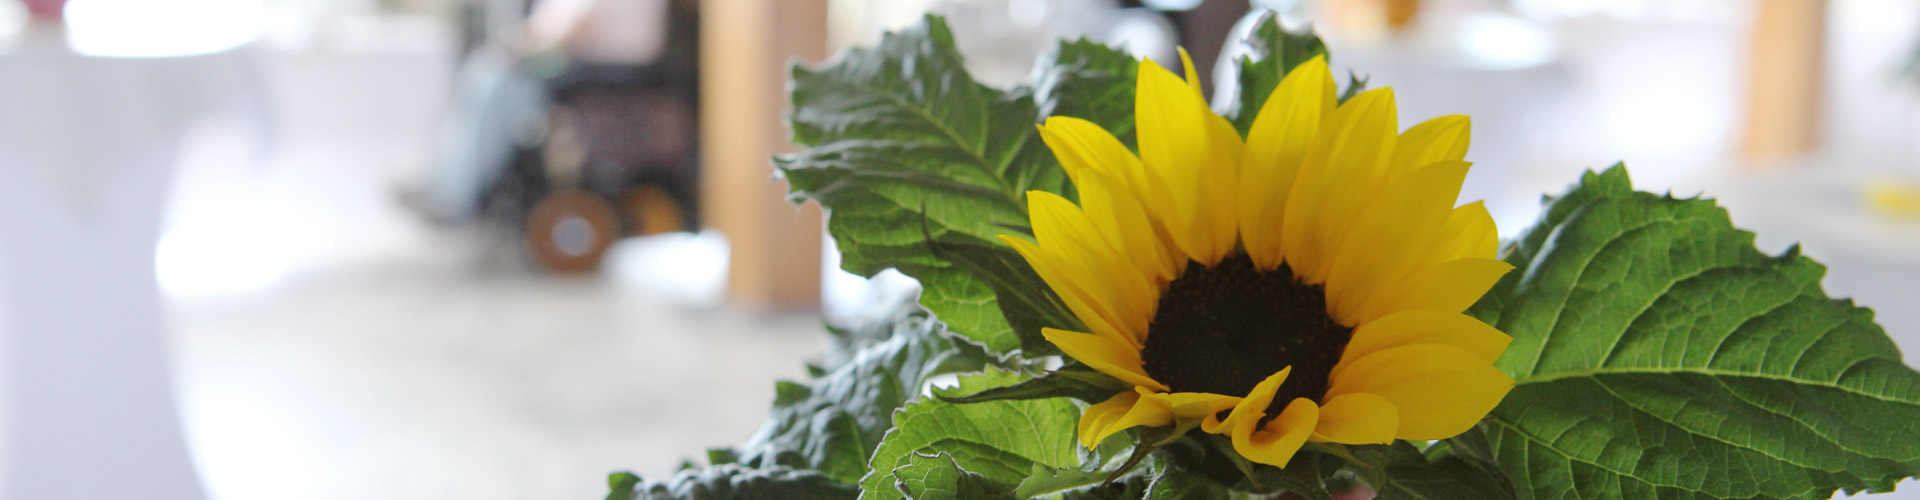 Die Sonnenblumen begleiten uns als starkes Zeichen für unsere Selbsthilfe-Organisation